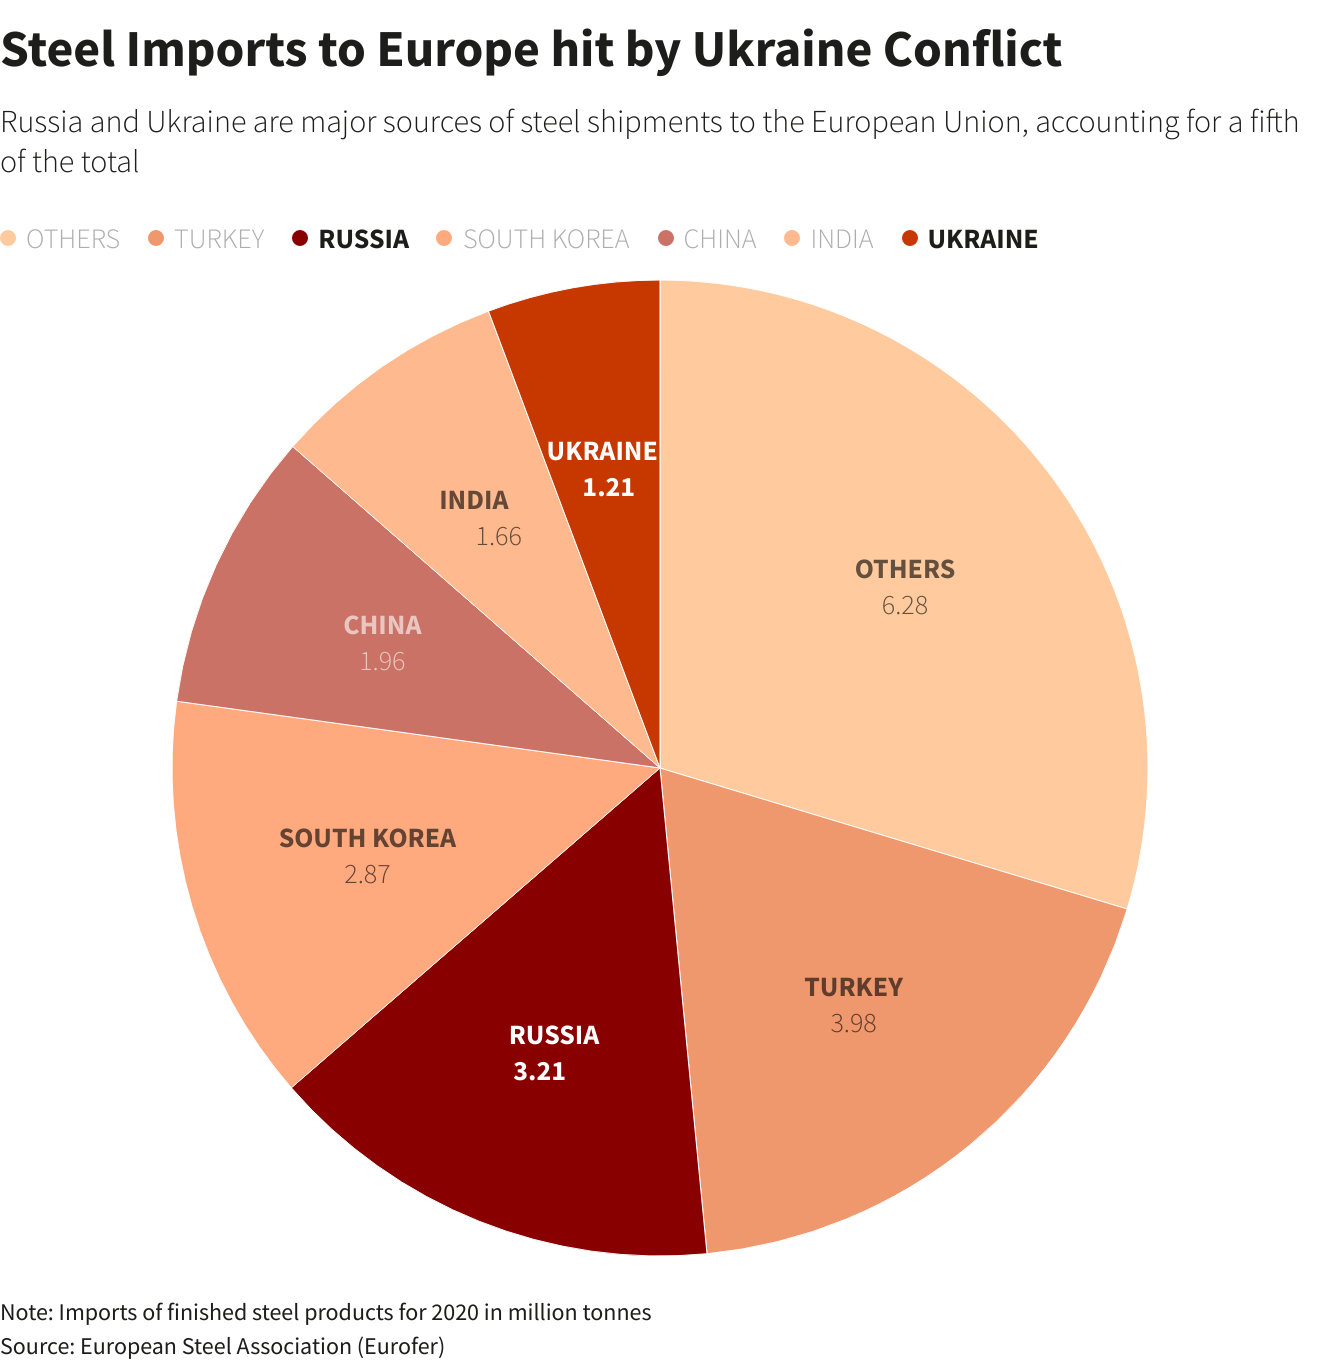 Importaciones de acero a Europa afectadas por el conflicto de Ucrania